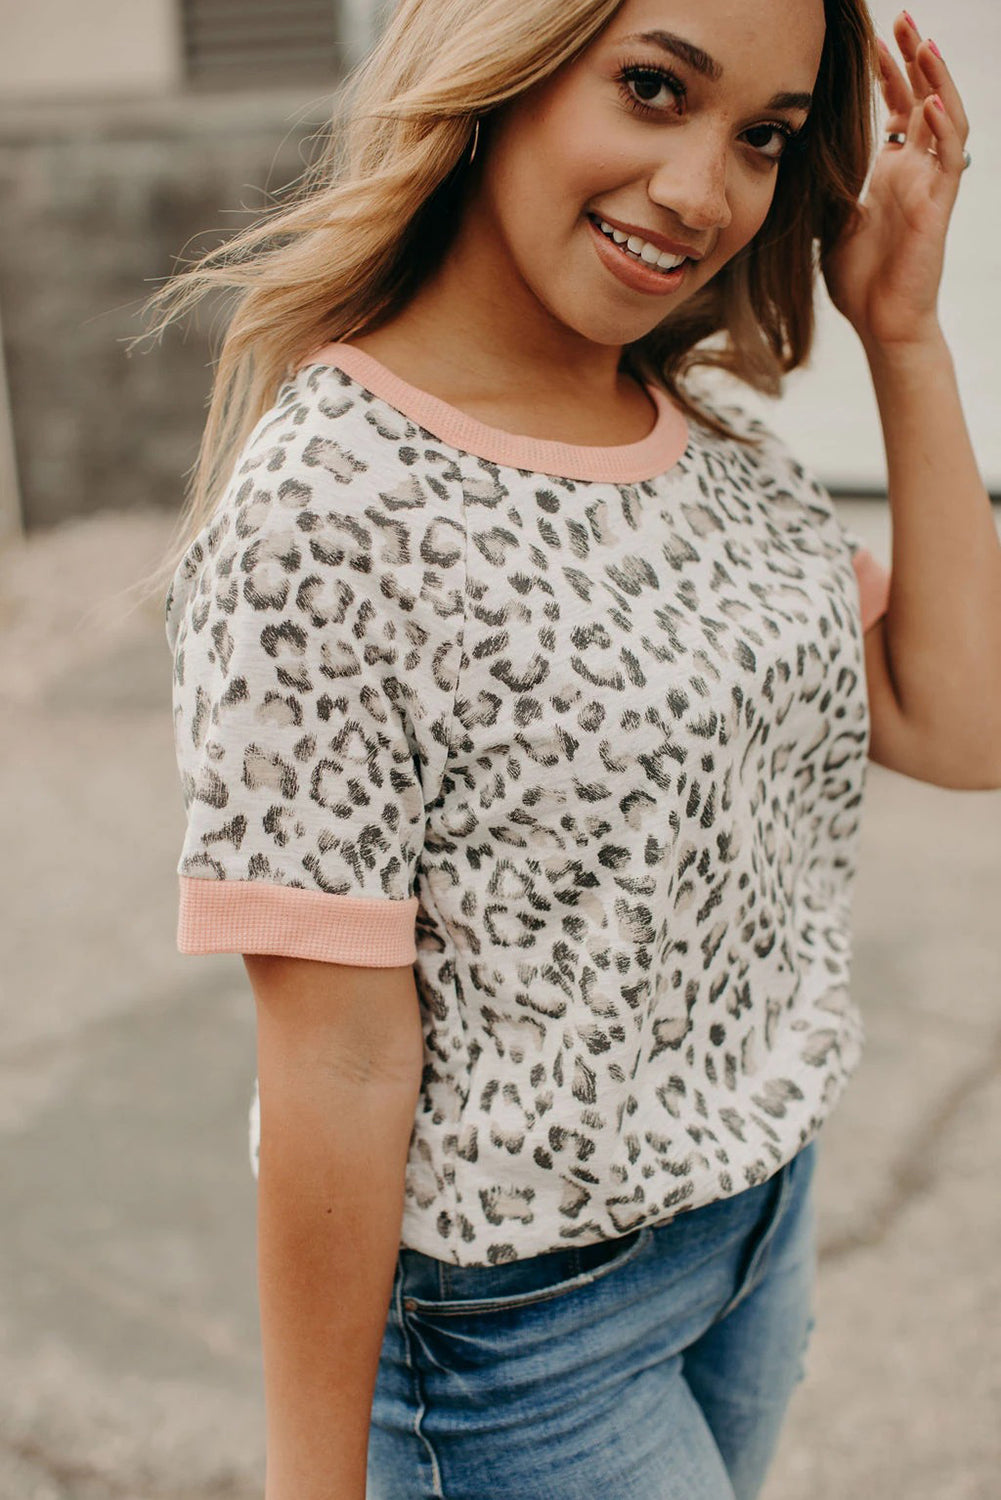 Rožnata majica z leopardjim prirobkom